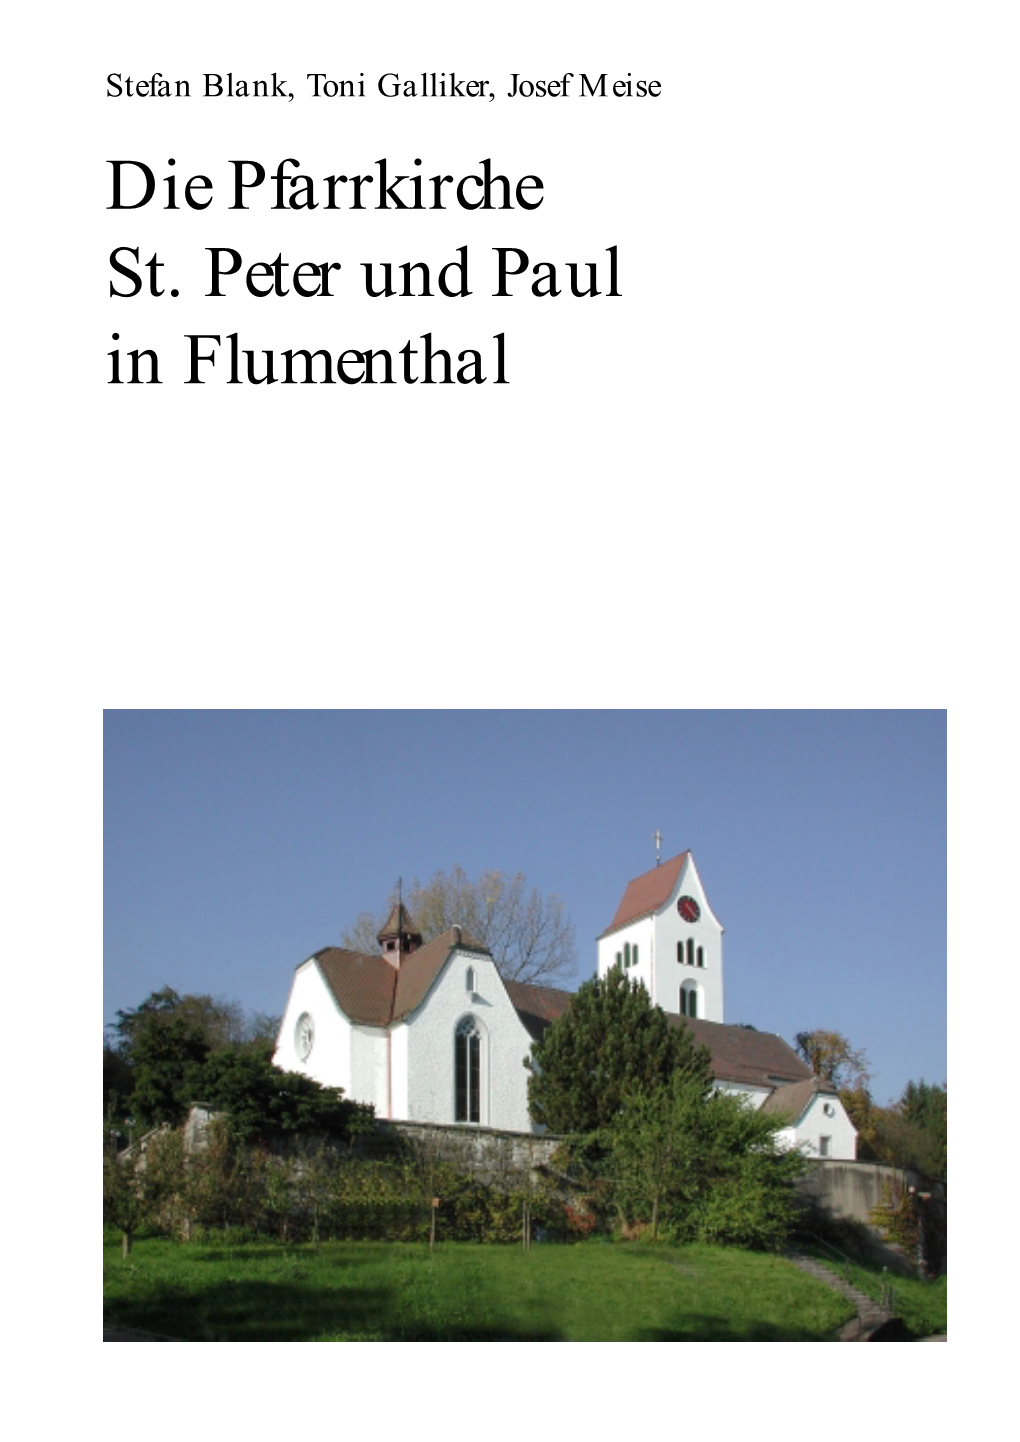 Die Pfarrkirche St. Peter Und Paul in Flumenthal